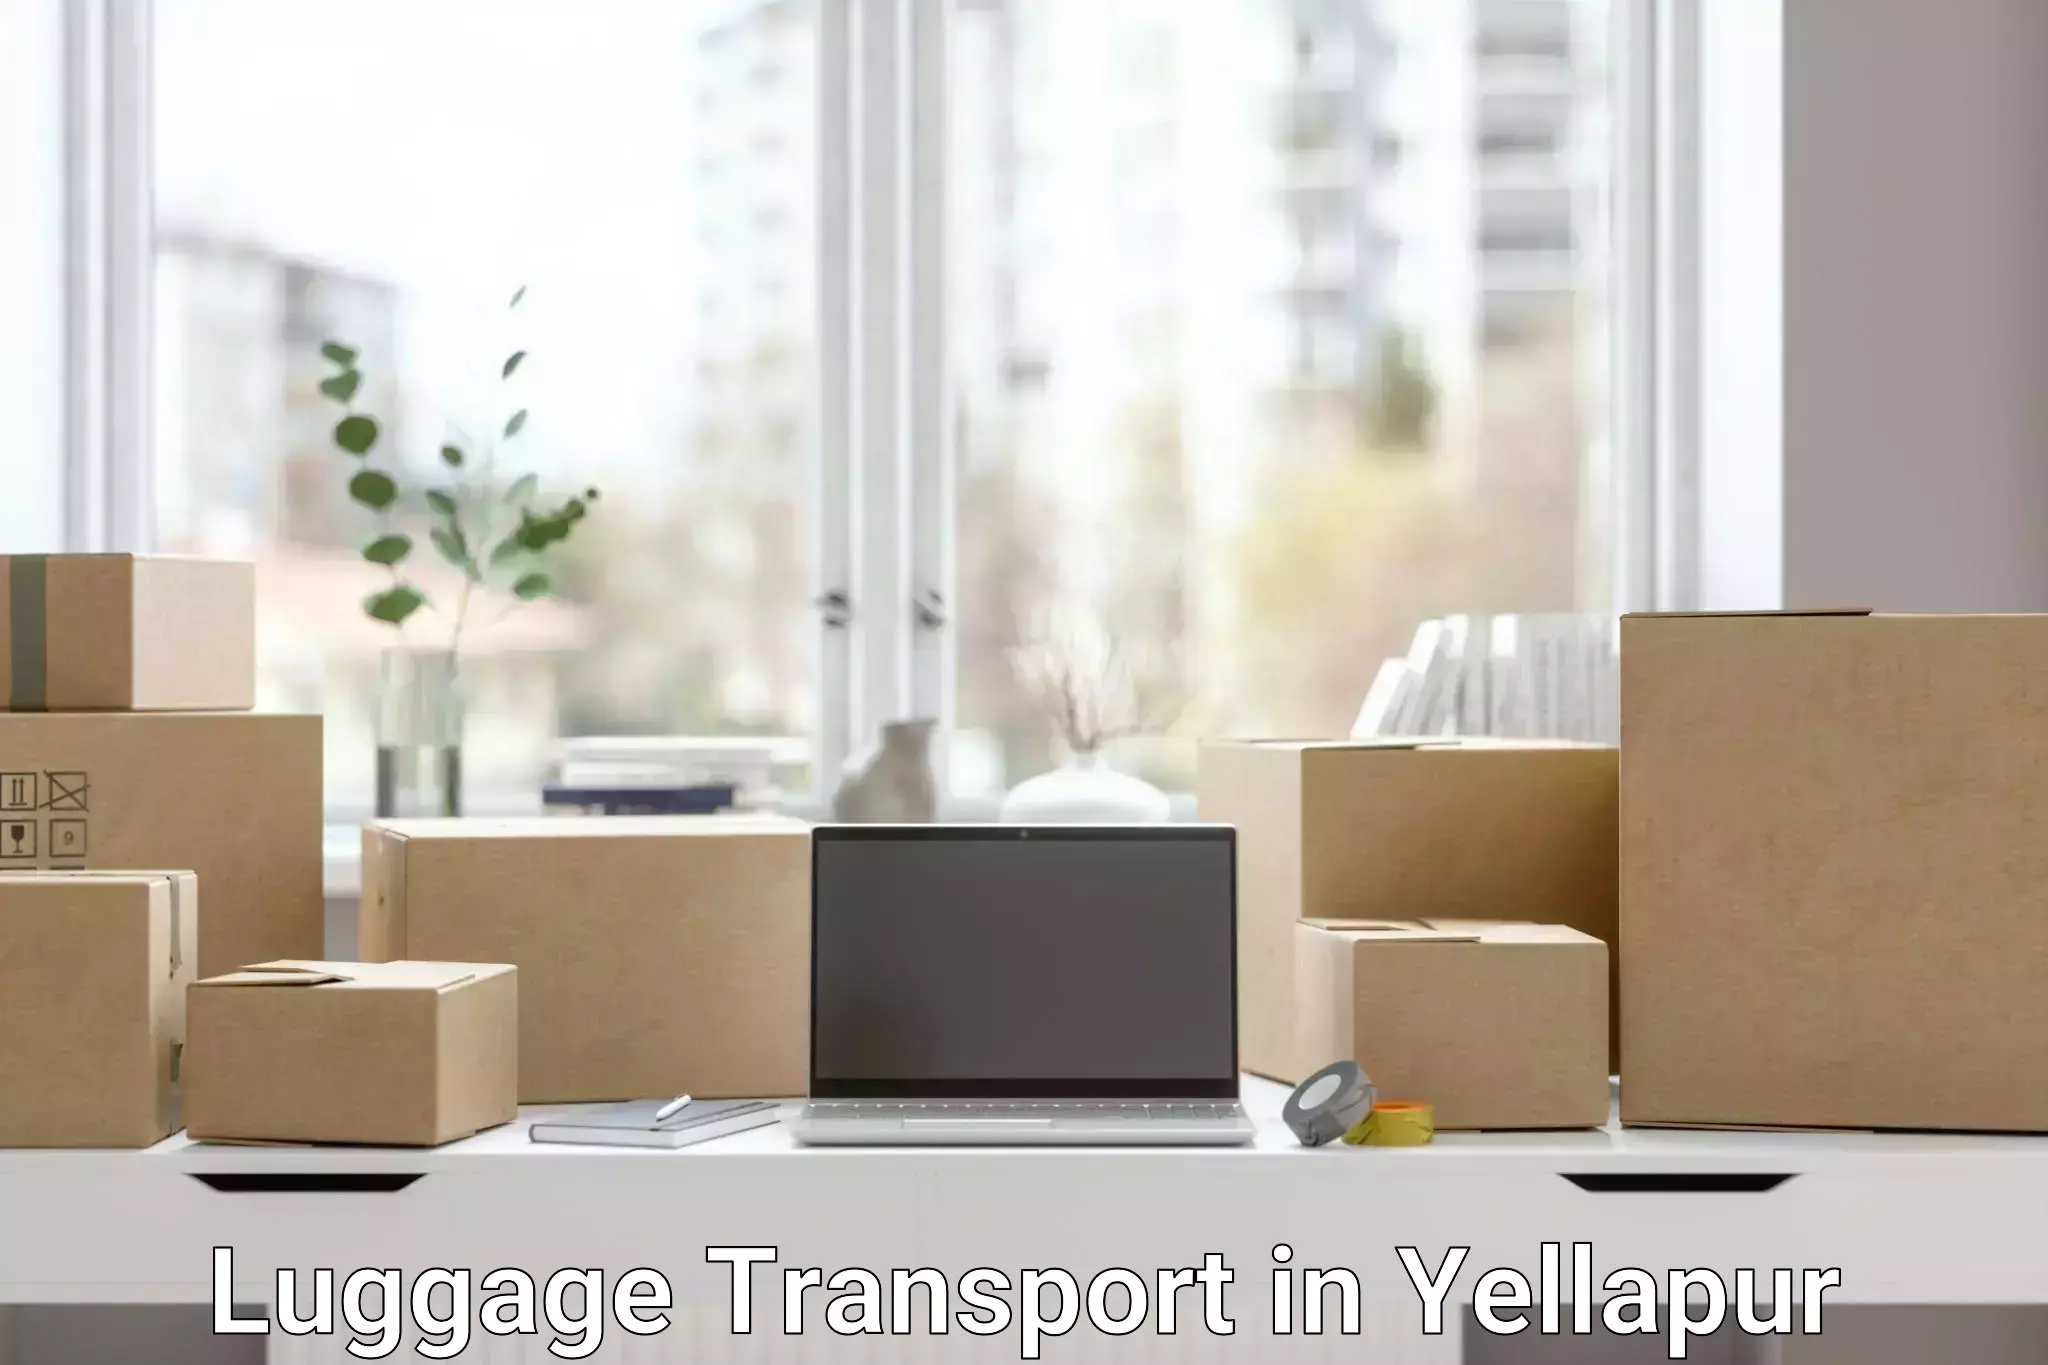 Heavy luggage shipping in Yellapur